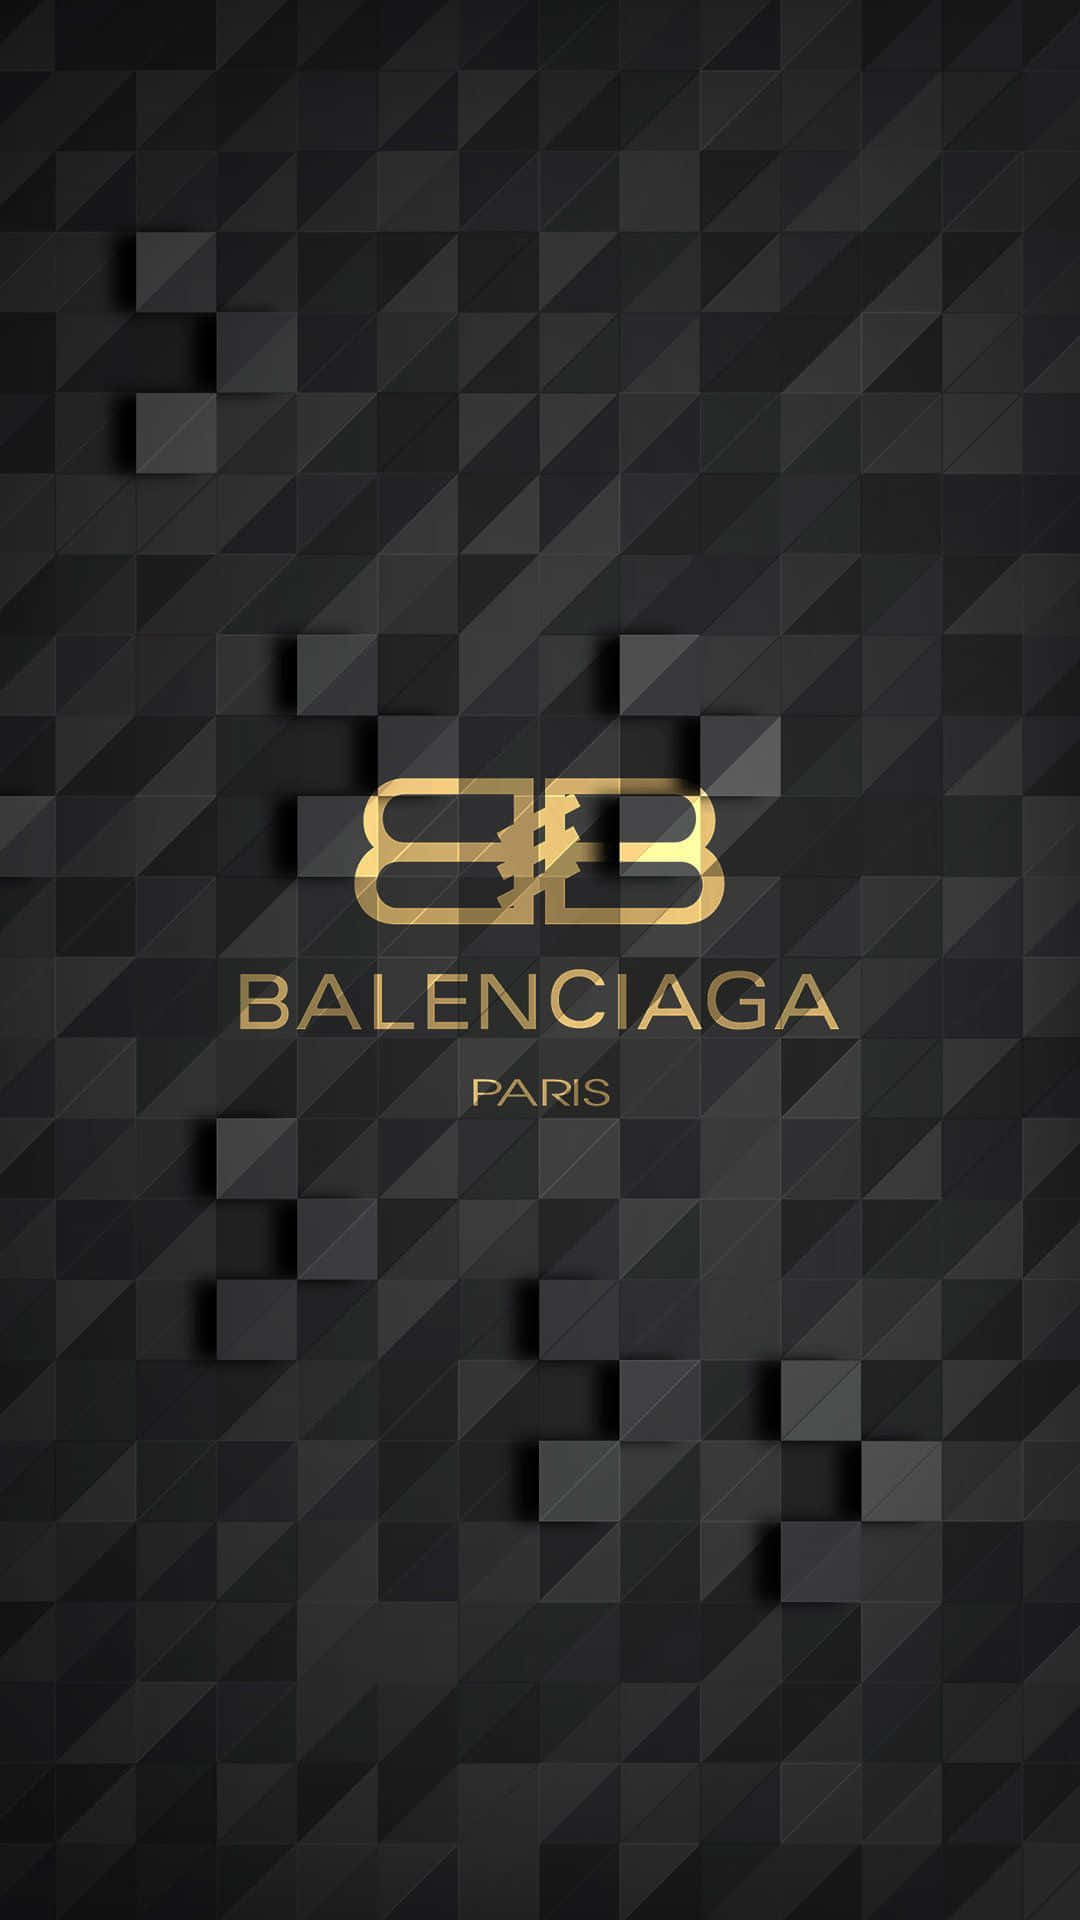 Download Balenciaga Paris Logo Wallpaper | Wallpapers.com